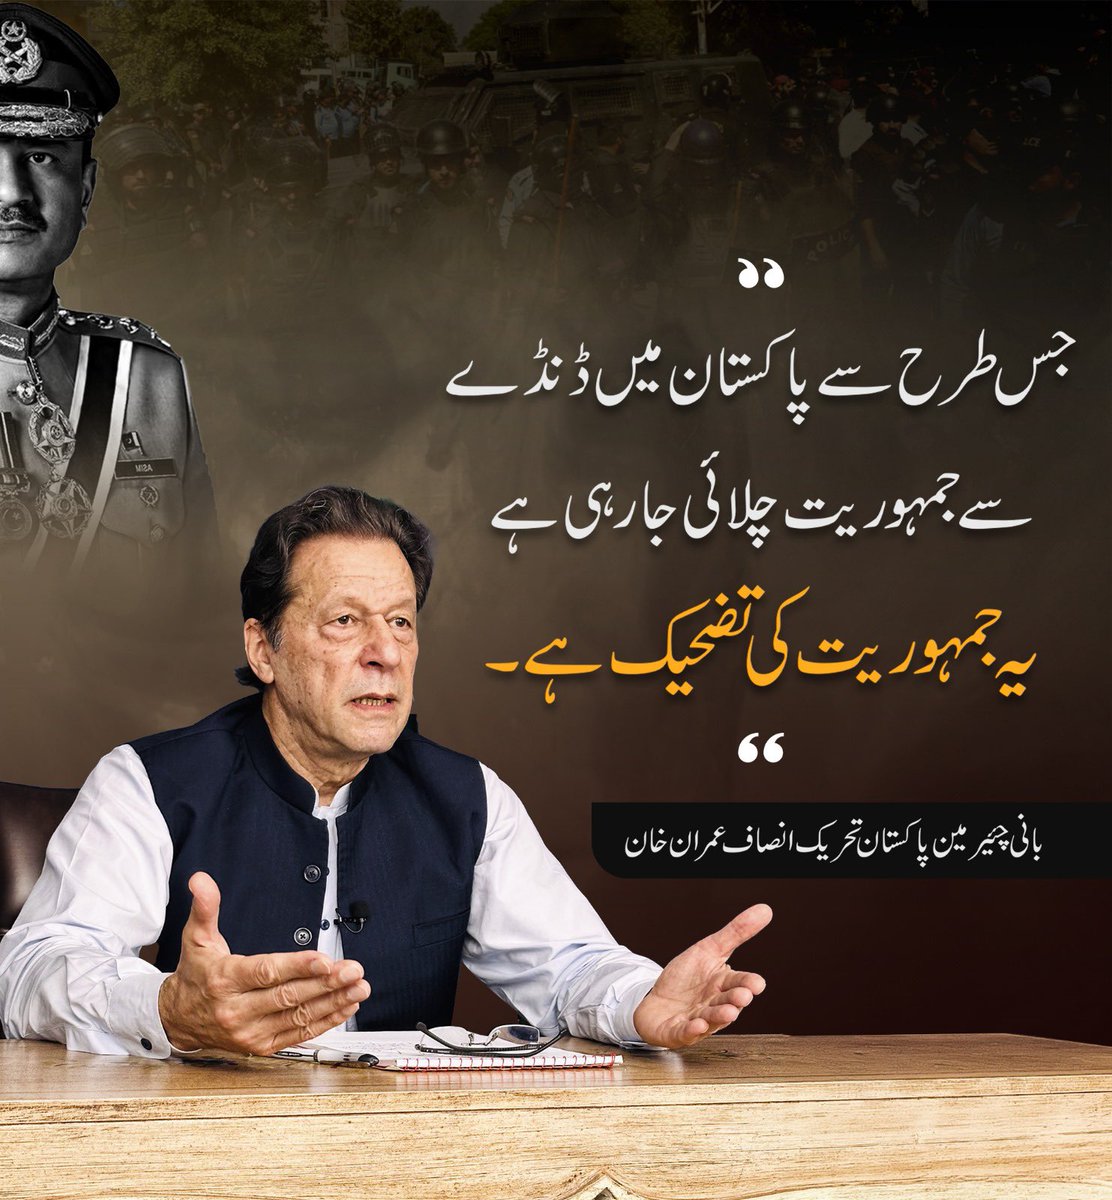 جس طرح سے پاکستان میں ڈنڈے سے جمہوریت چلائی جا رہی ہےیہ جمہوریت کی تضحیک ہے۔@ImranKhanPTI